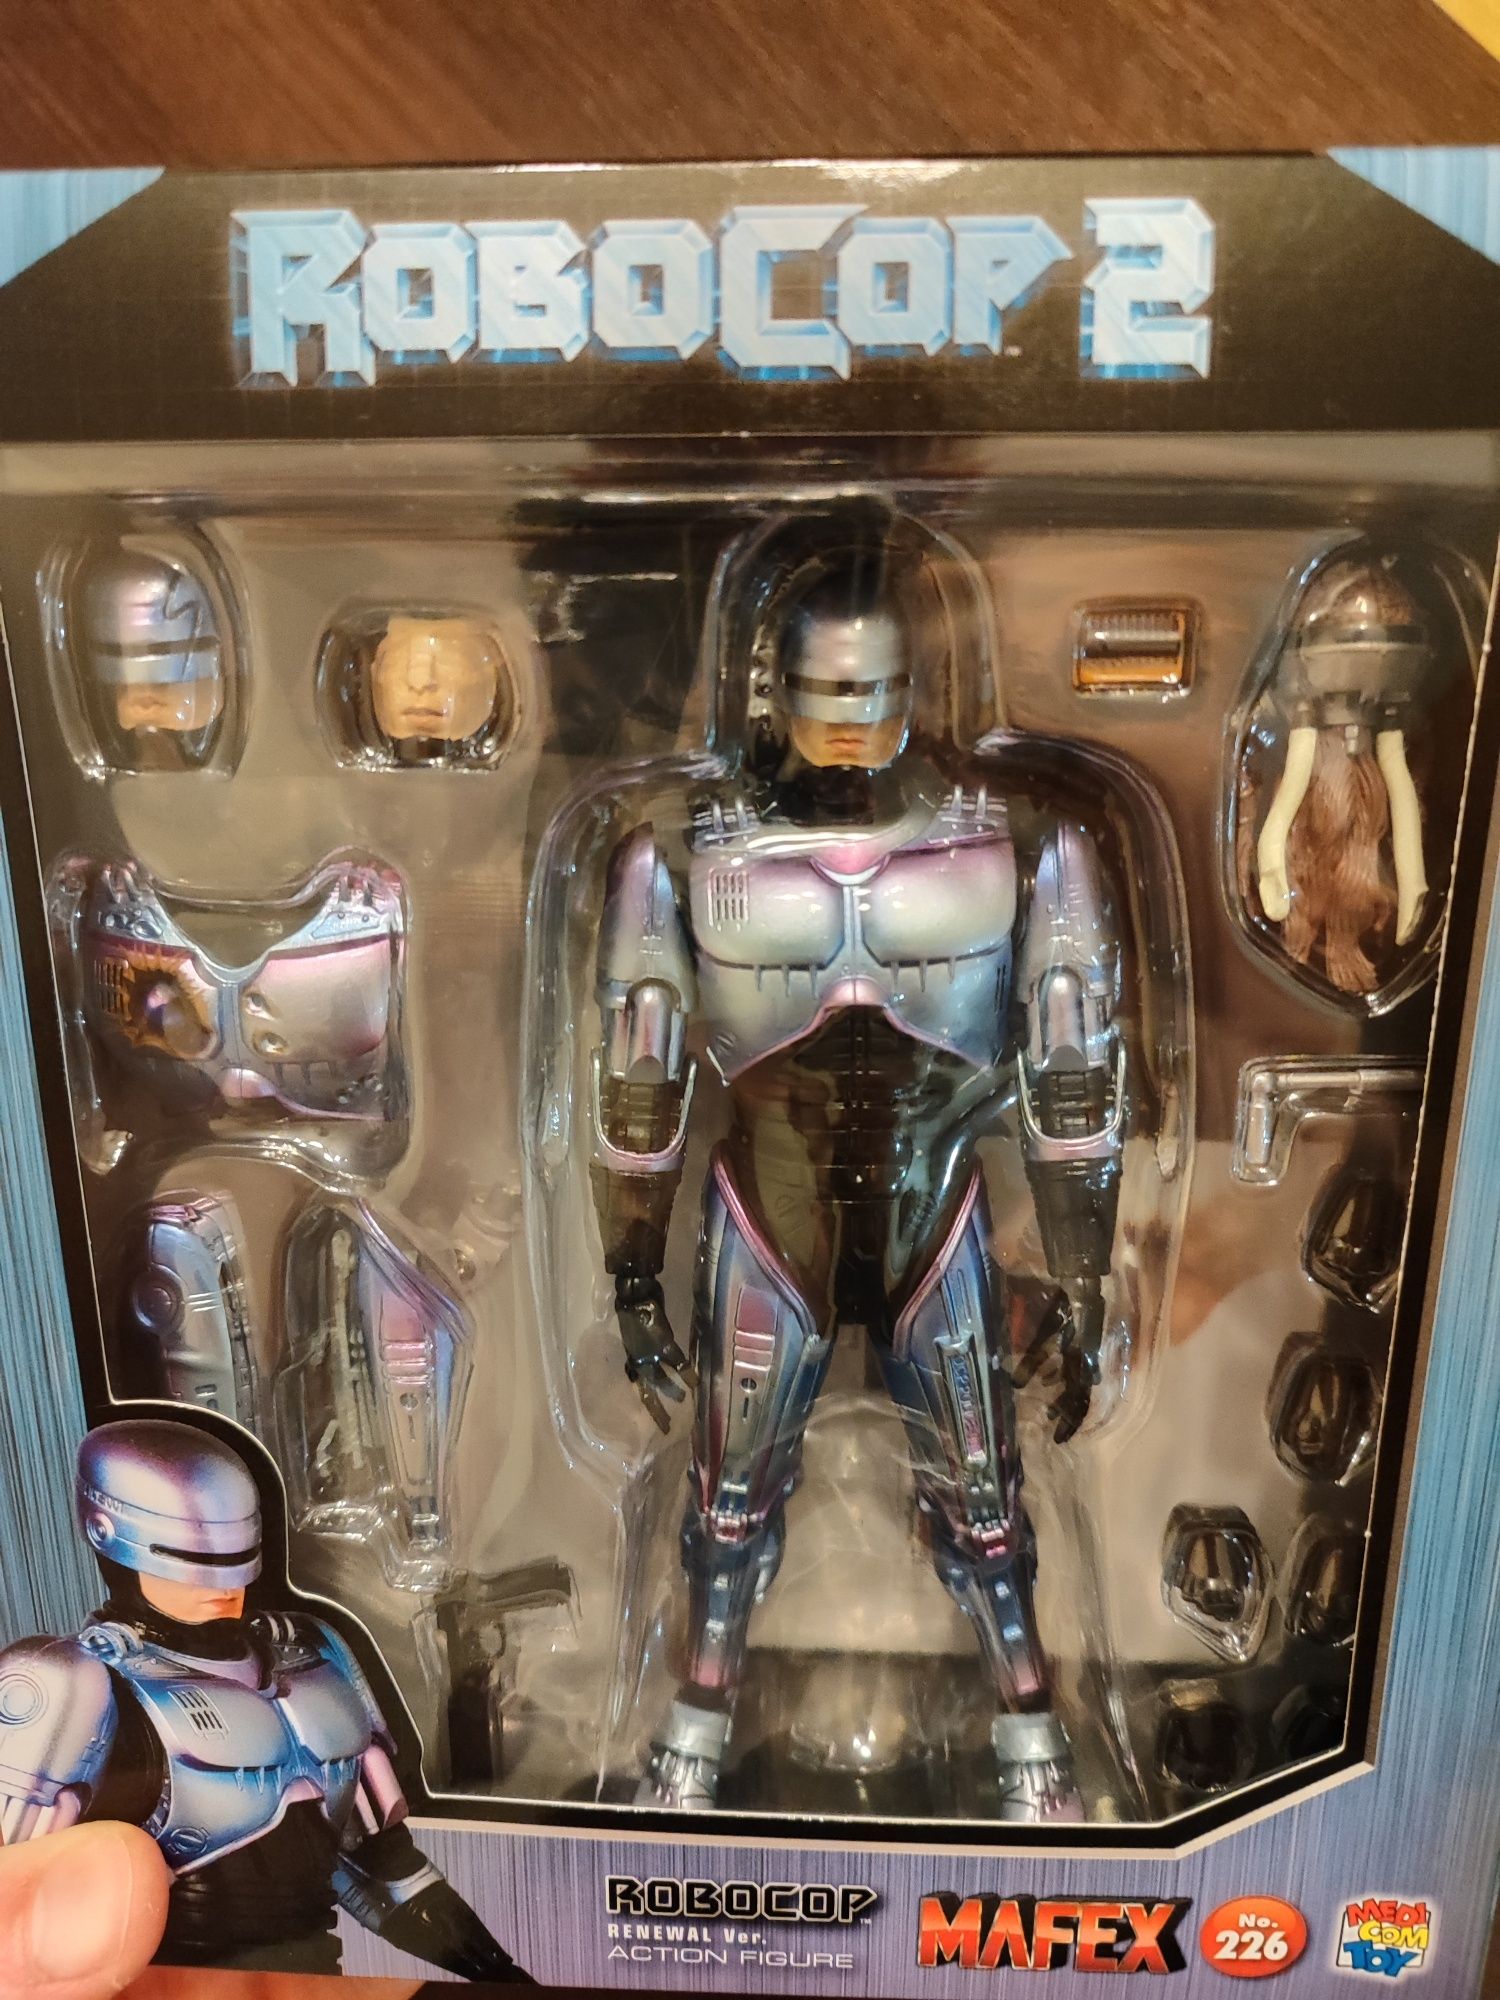 Figurka Mafex Medicom Toy Robocop 2, nie Neca